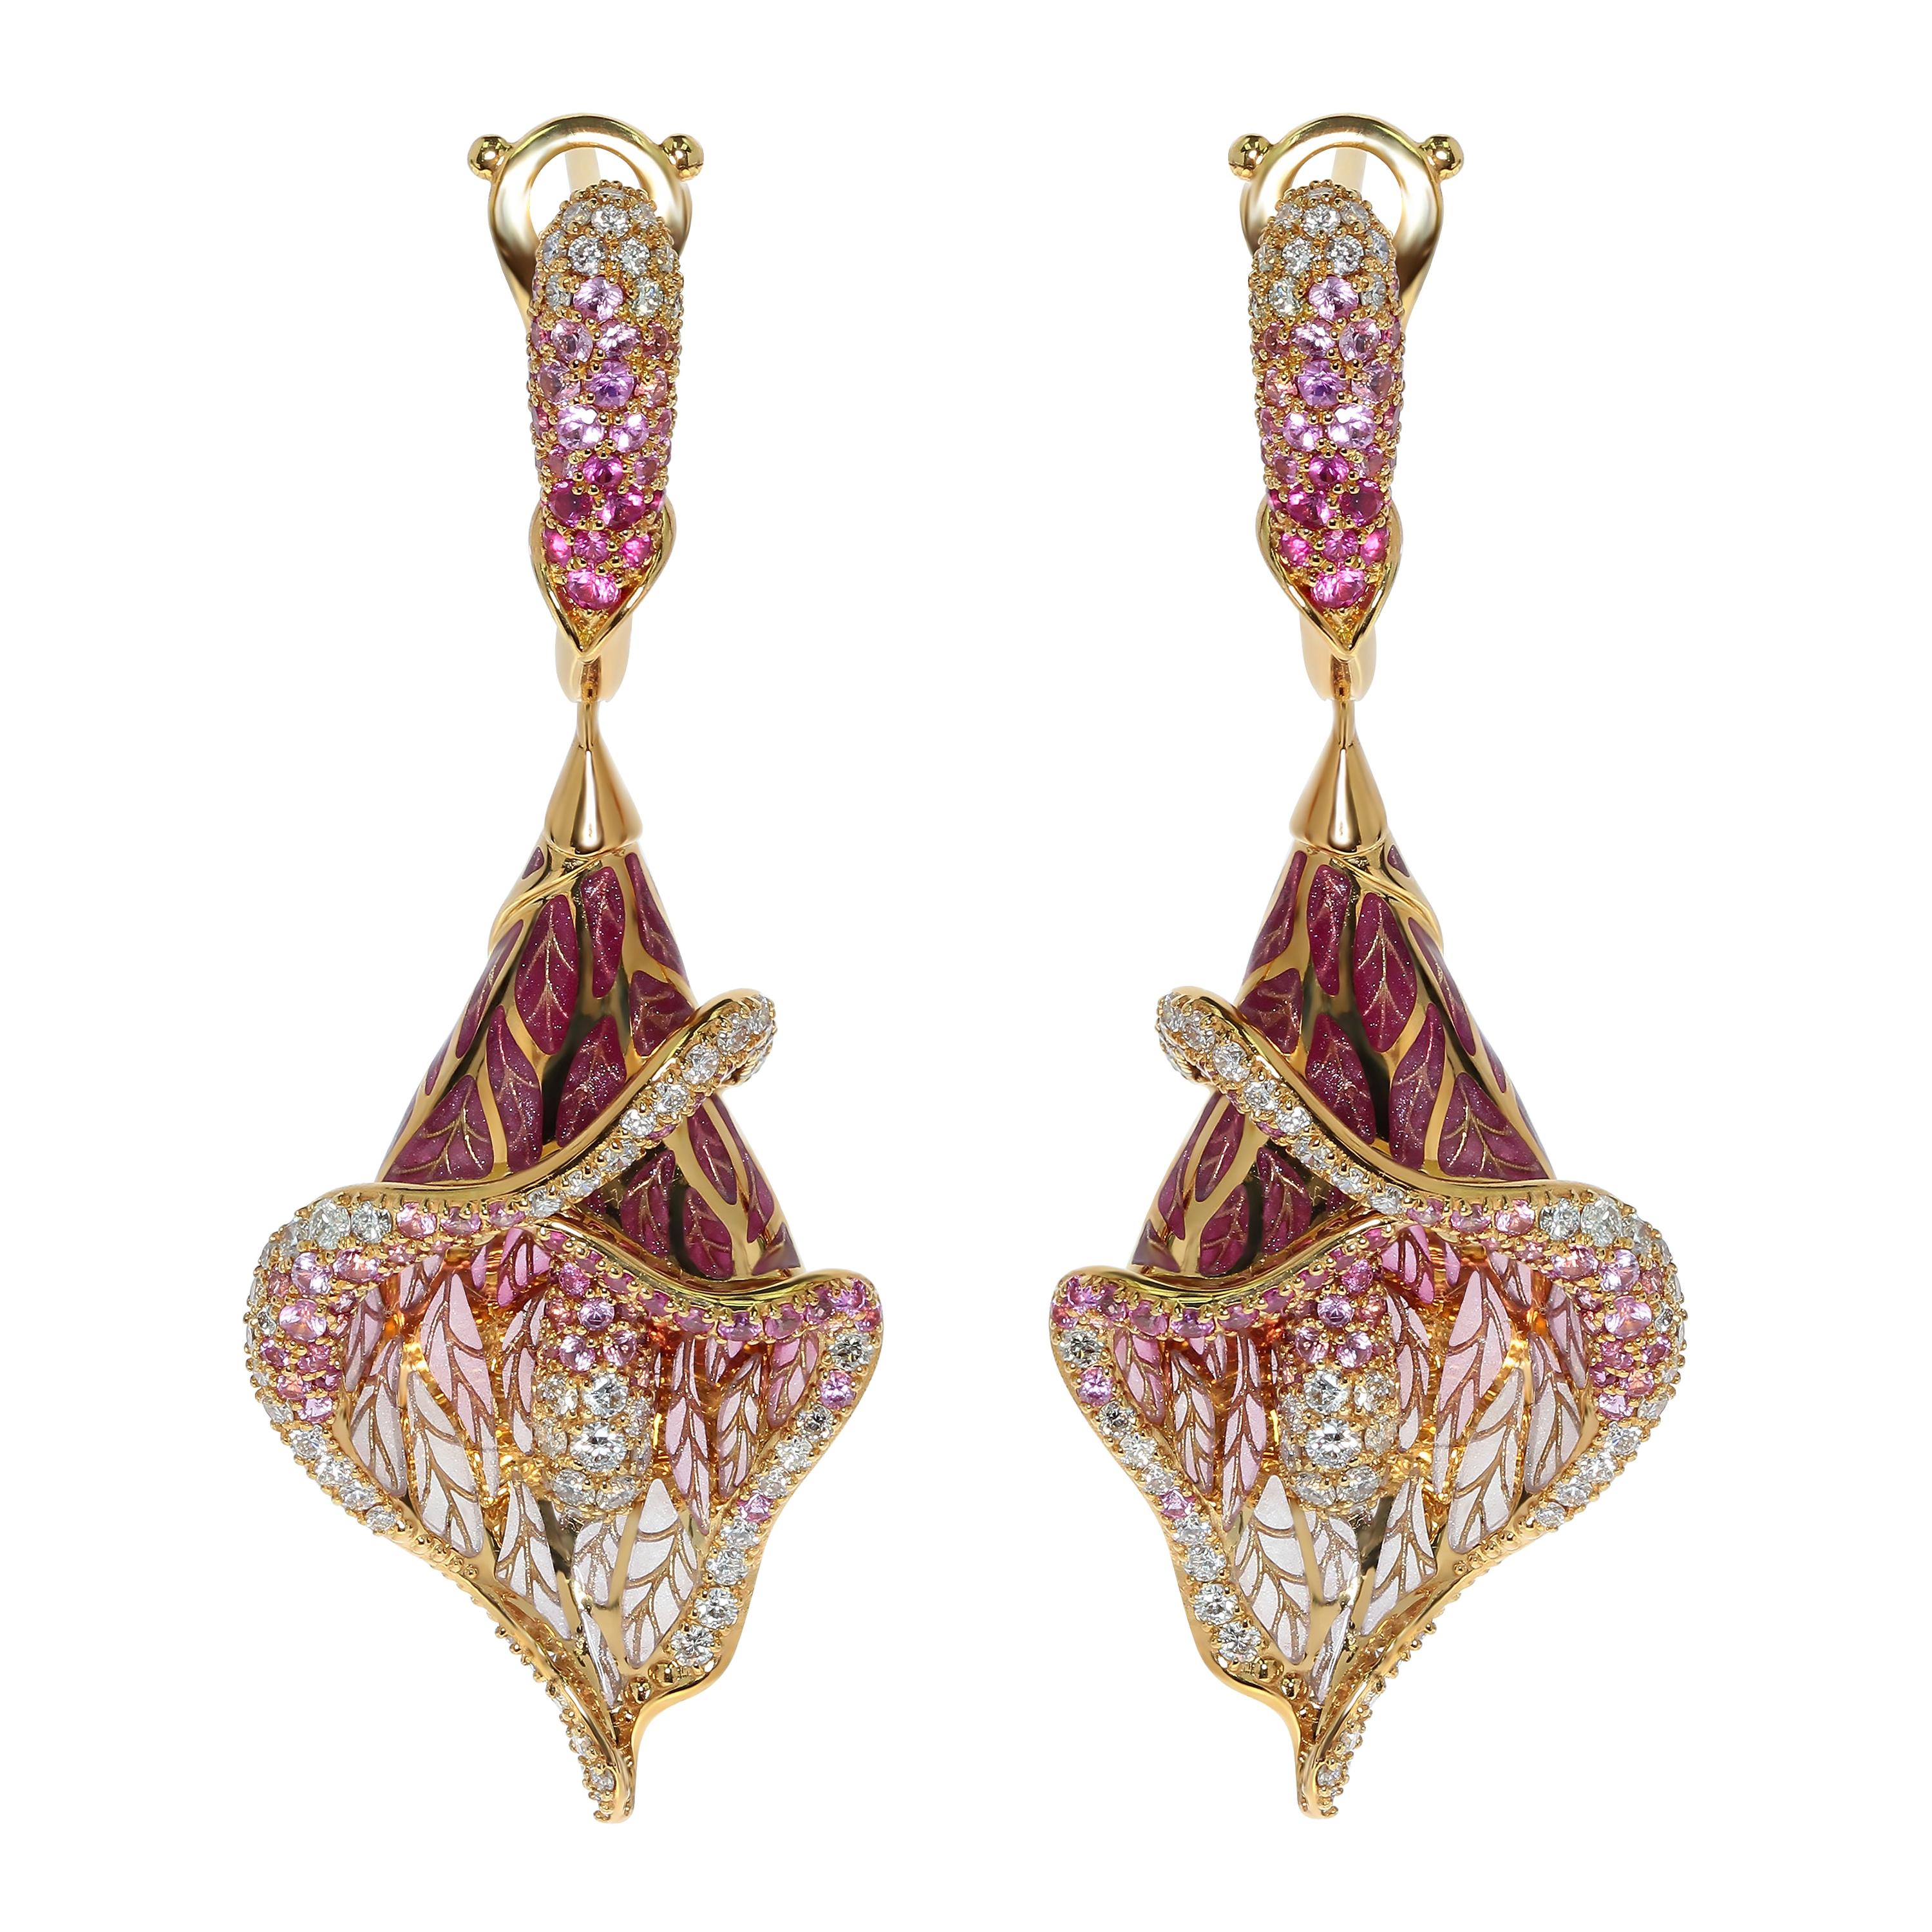 Boucles d'oreilles en or jaune 18 carats avec saphirs roses, diamants et émail coloré